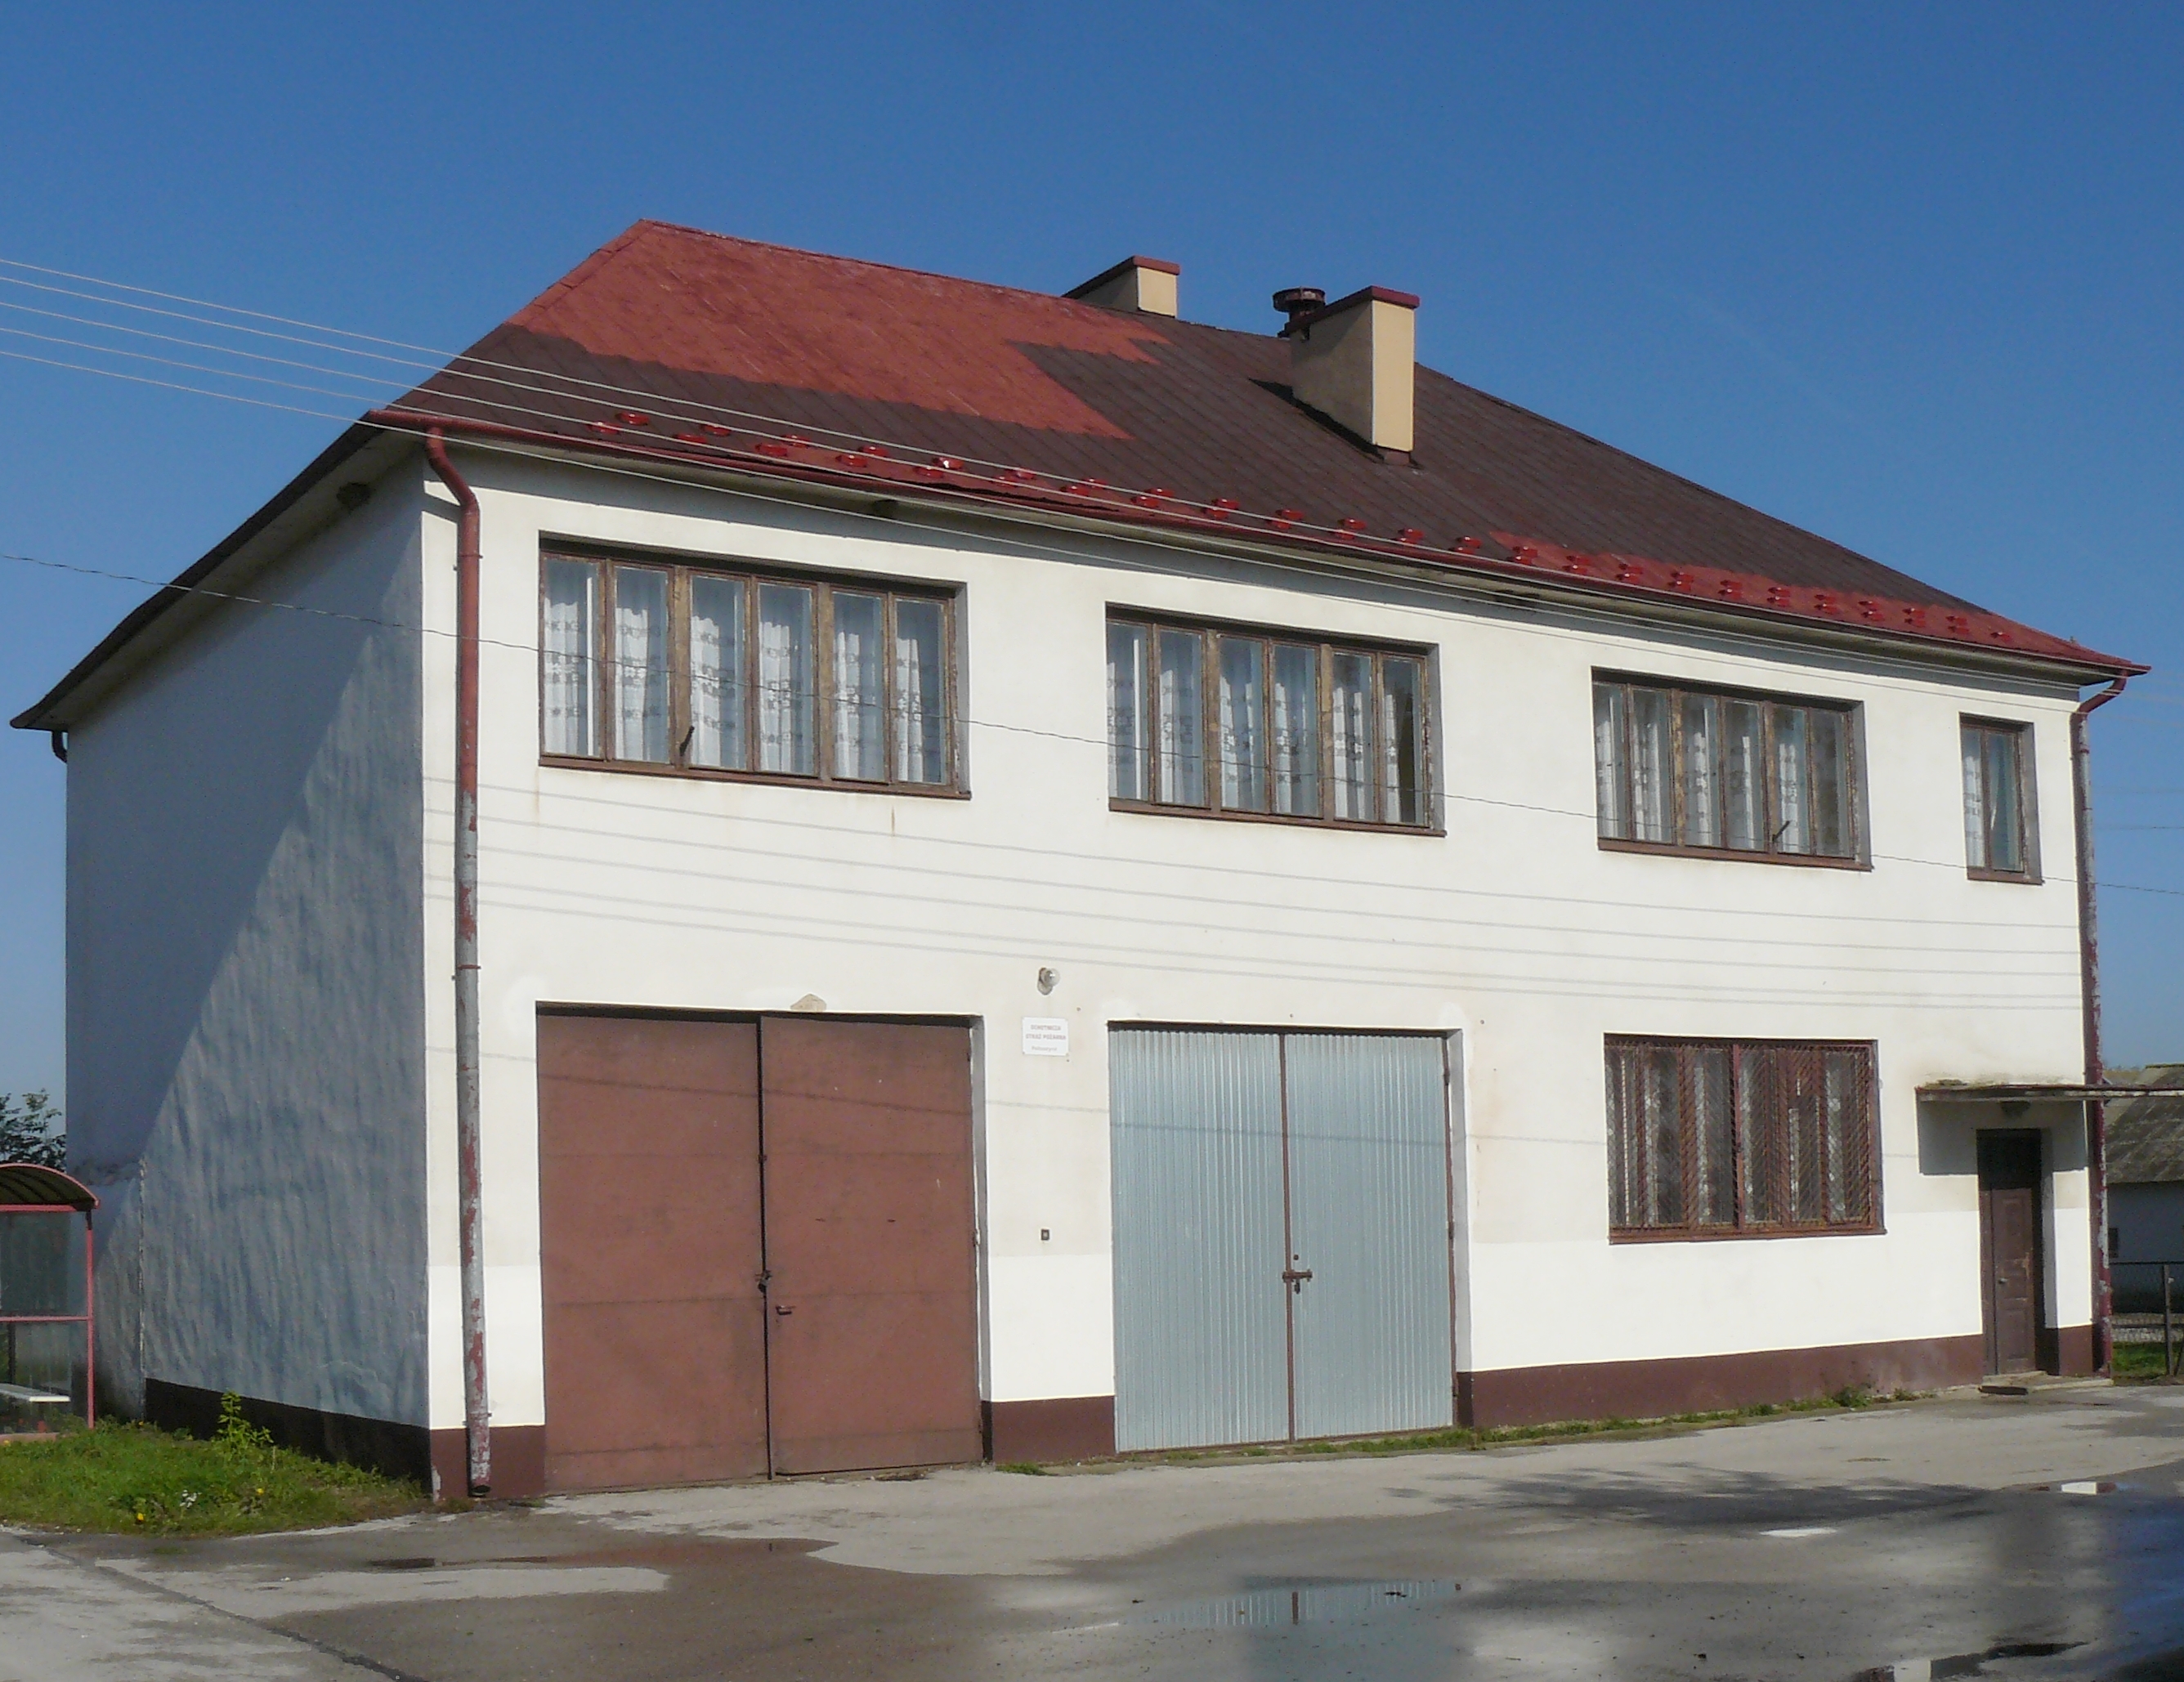 zdjęcie przedstawia widok budynku Domu ludowego w miejscowości Pałuszyce